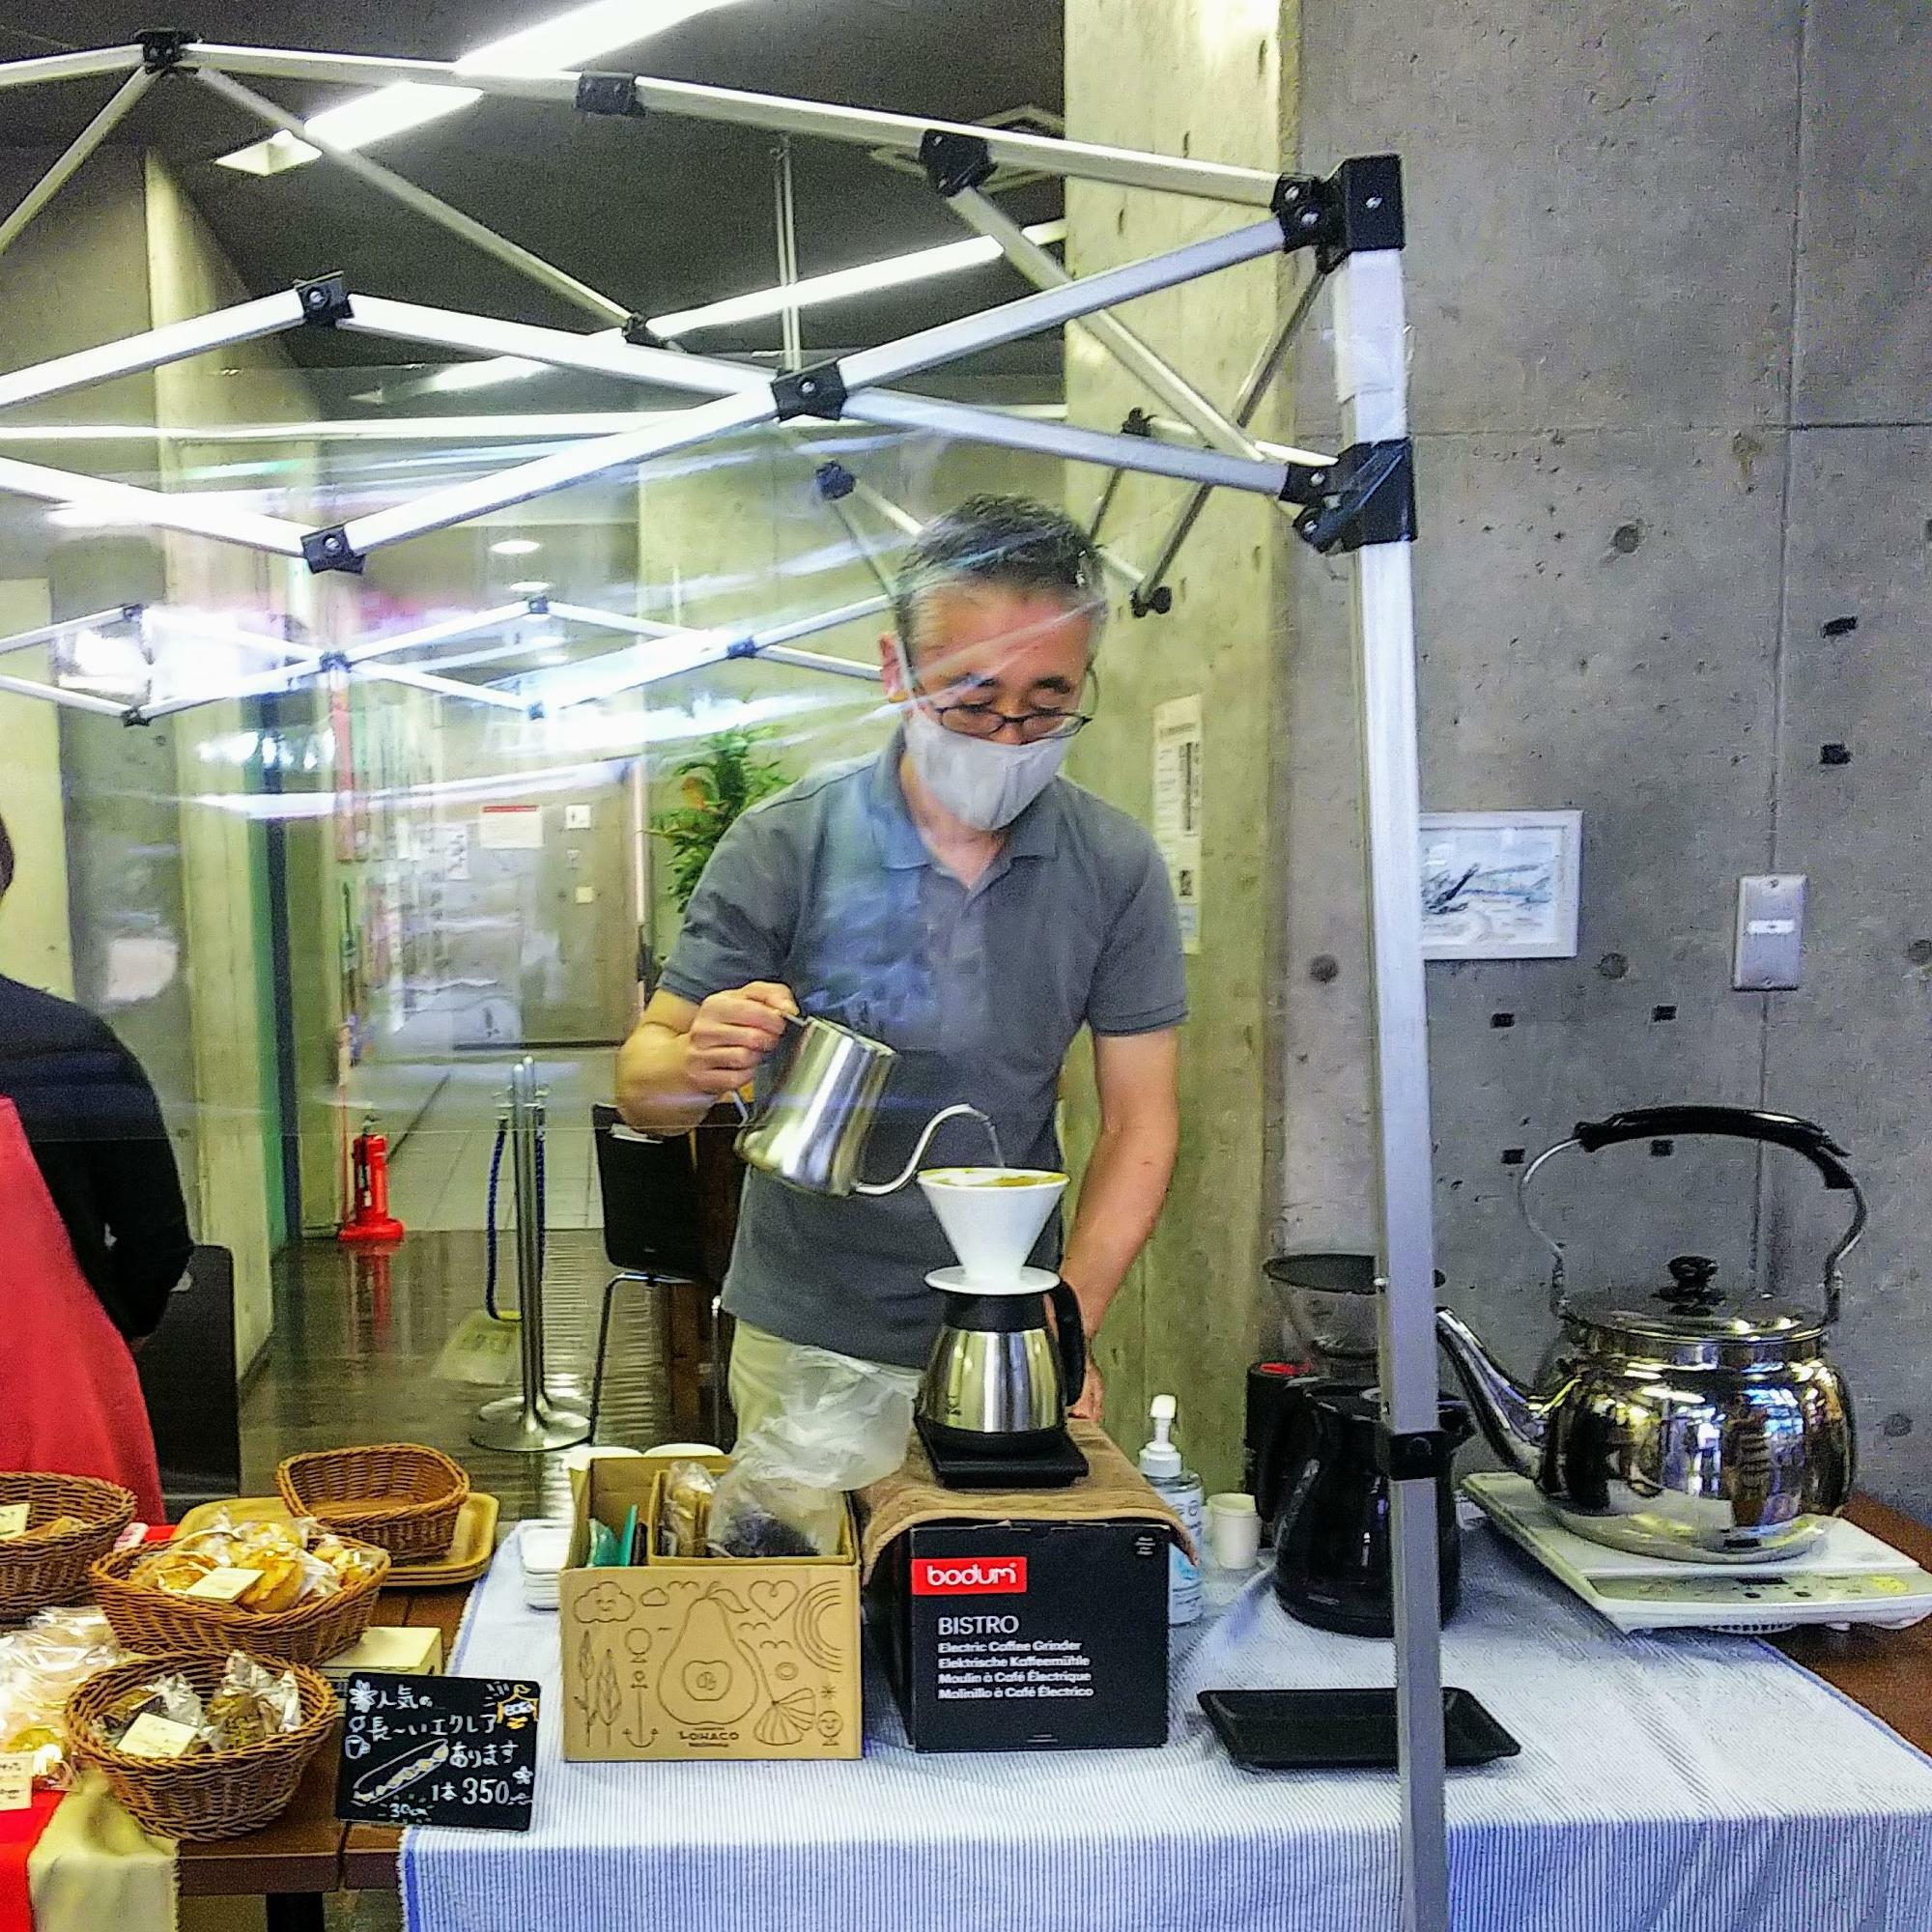 海外でコーヒーの栽培経験を持つ珈琲職人・田代さんによる「マサキーズコーヒー」